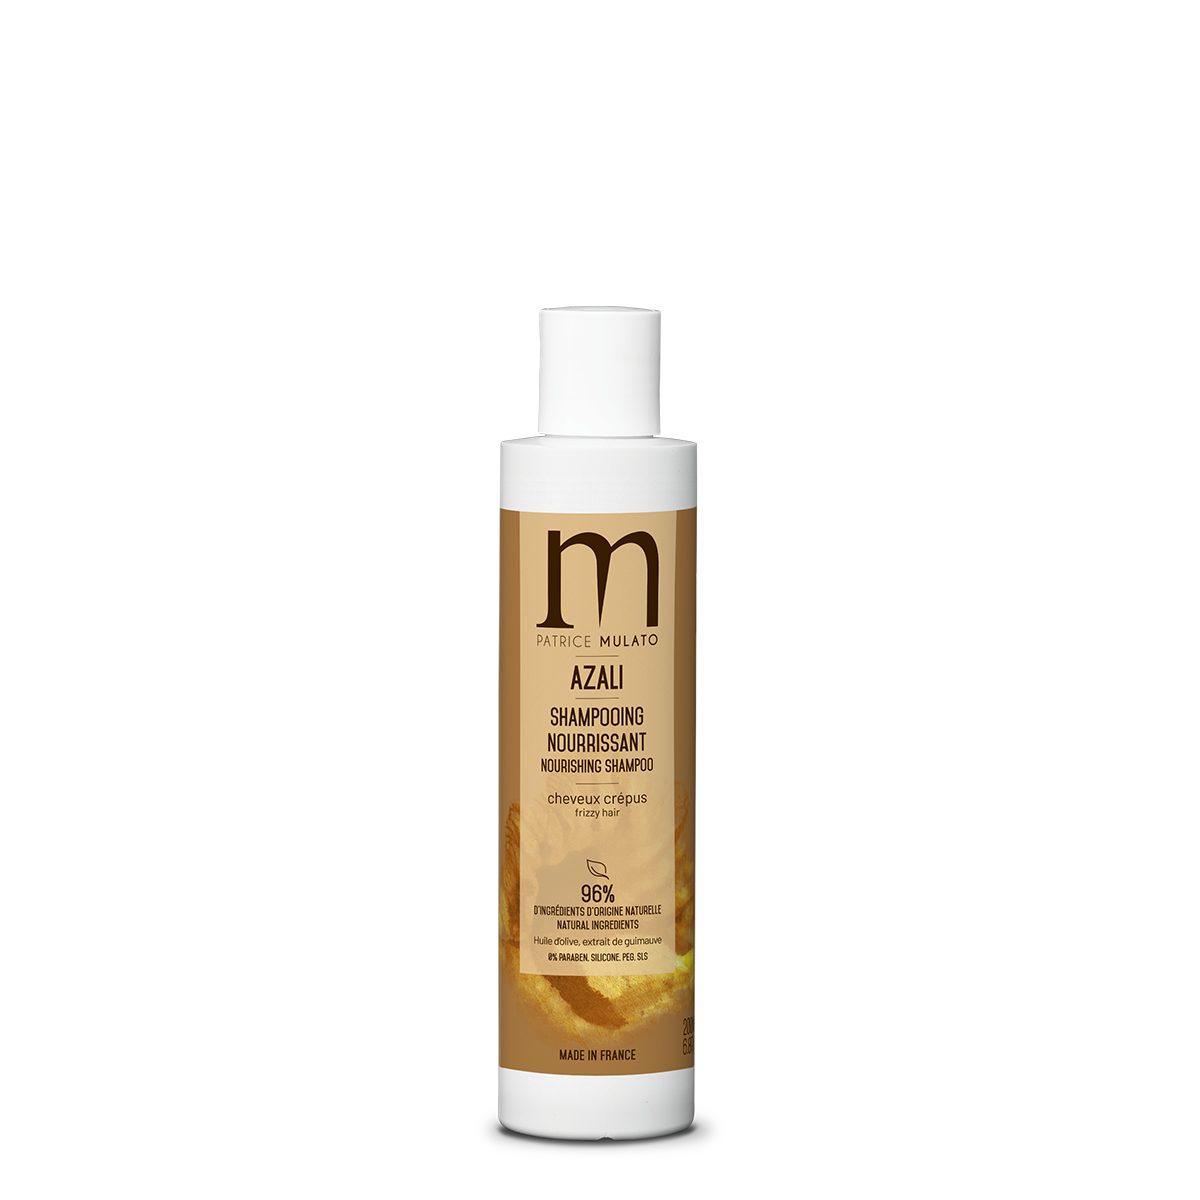 Mulato - shampooing nourrissant cheveux crépus - 200 ml - Nutrition extrême